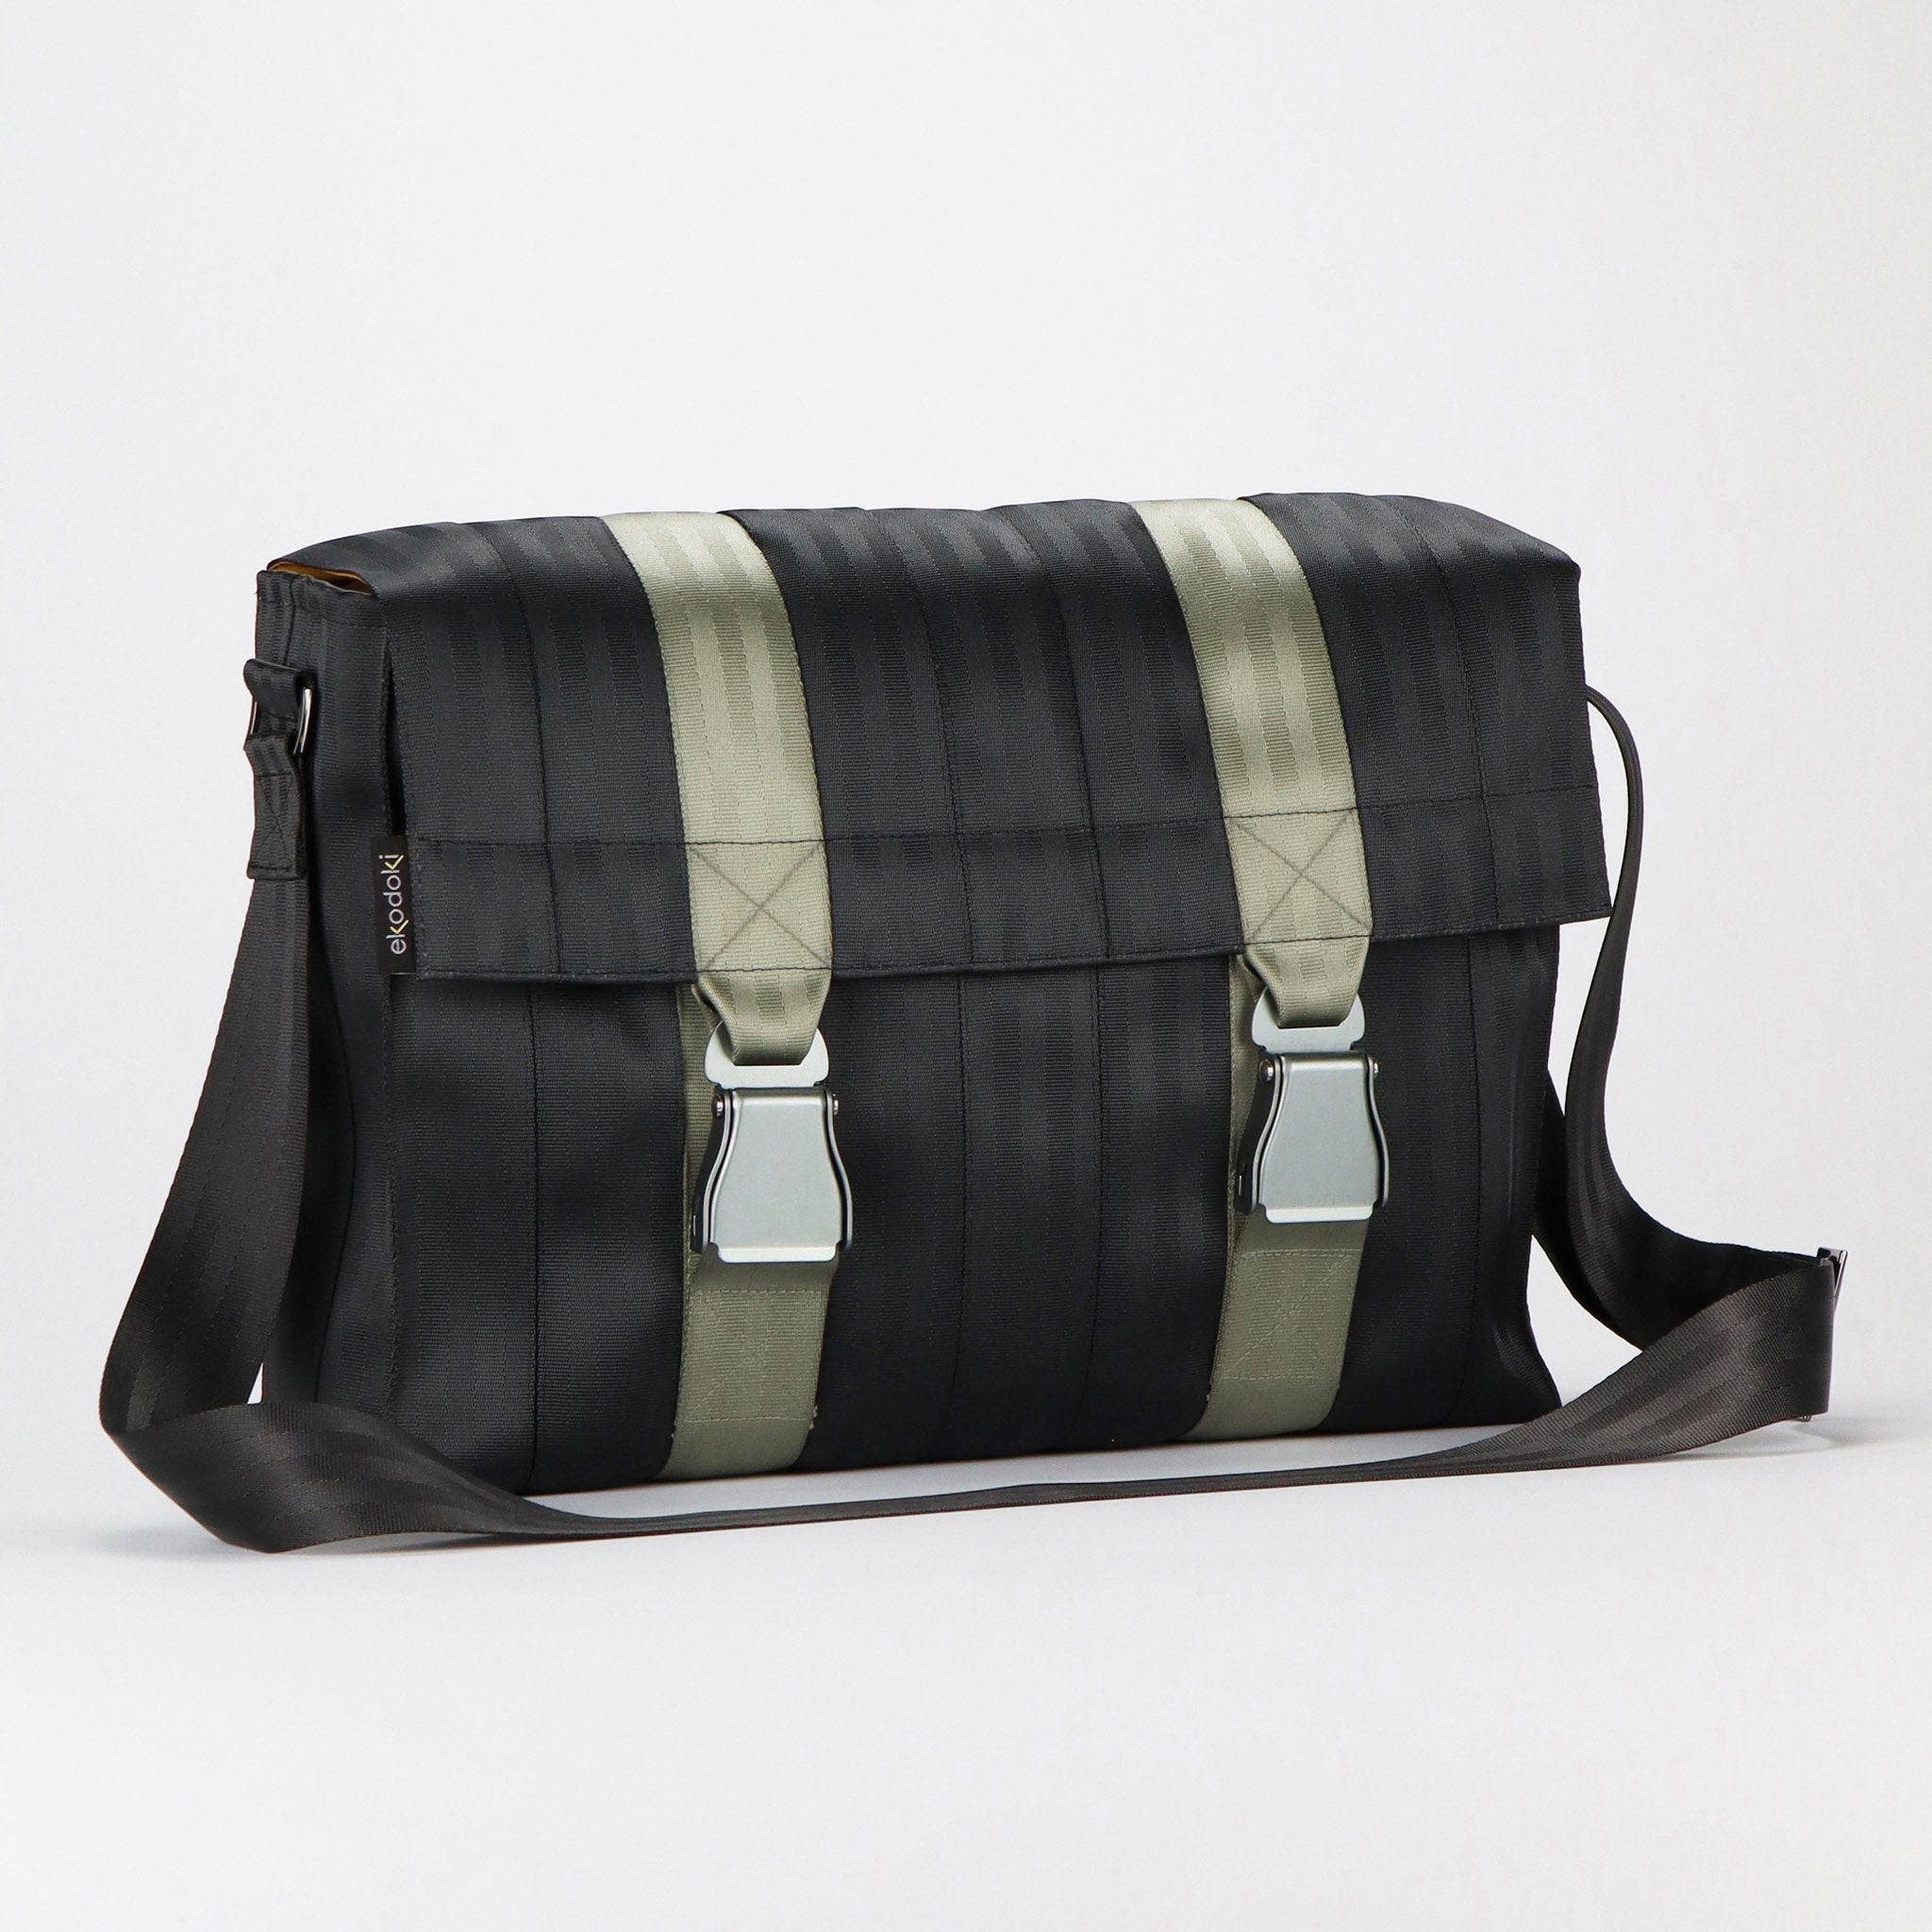 Harvey's Seatbelt Bag Clutch Shoulder Bags | Mercari